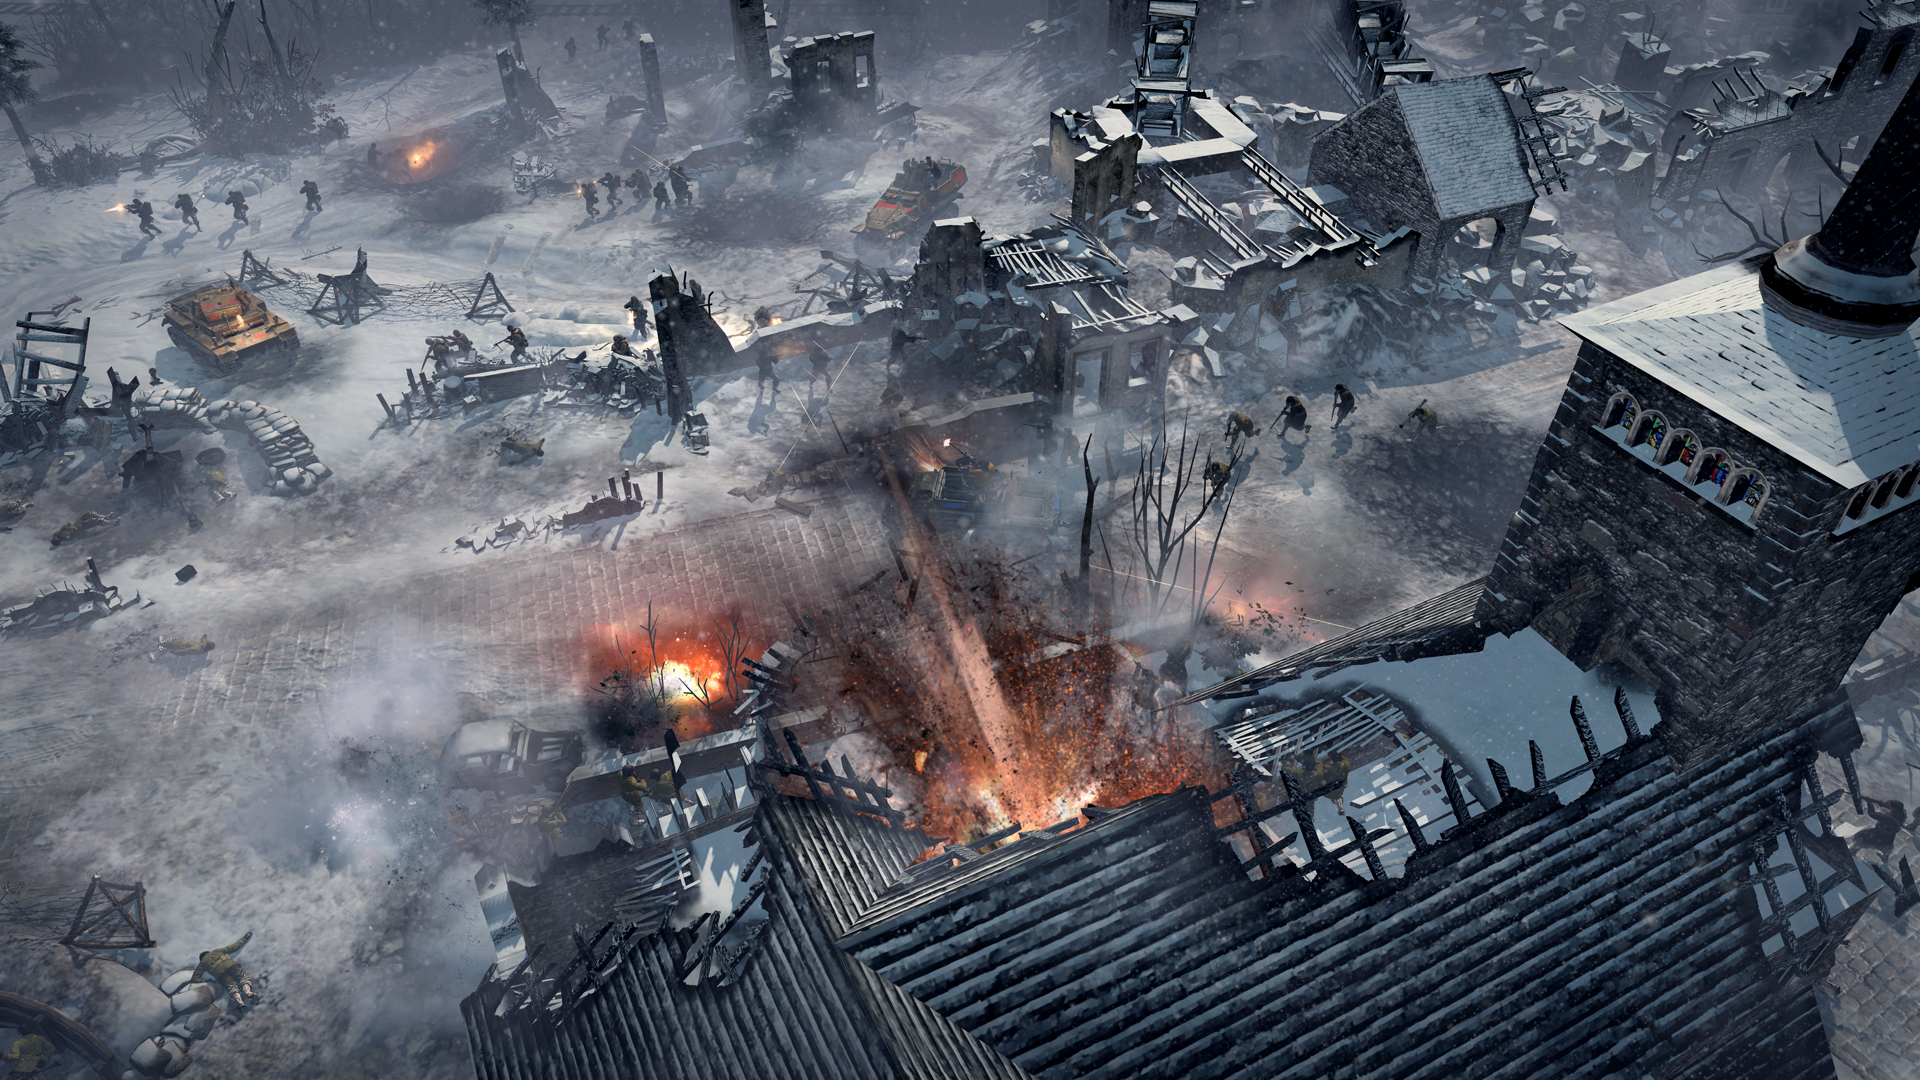 Bästa krigsspel: Company of Heroes 2: Ardennes Assault. Bilden visar soldater i ett kallt kargat landskap som ses ovanifrån